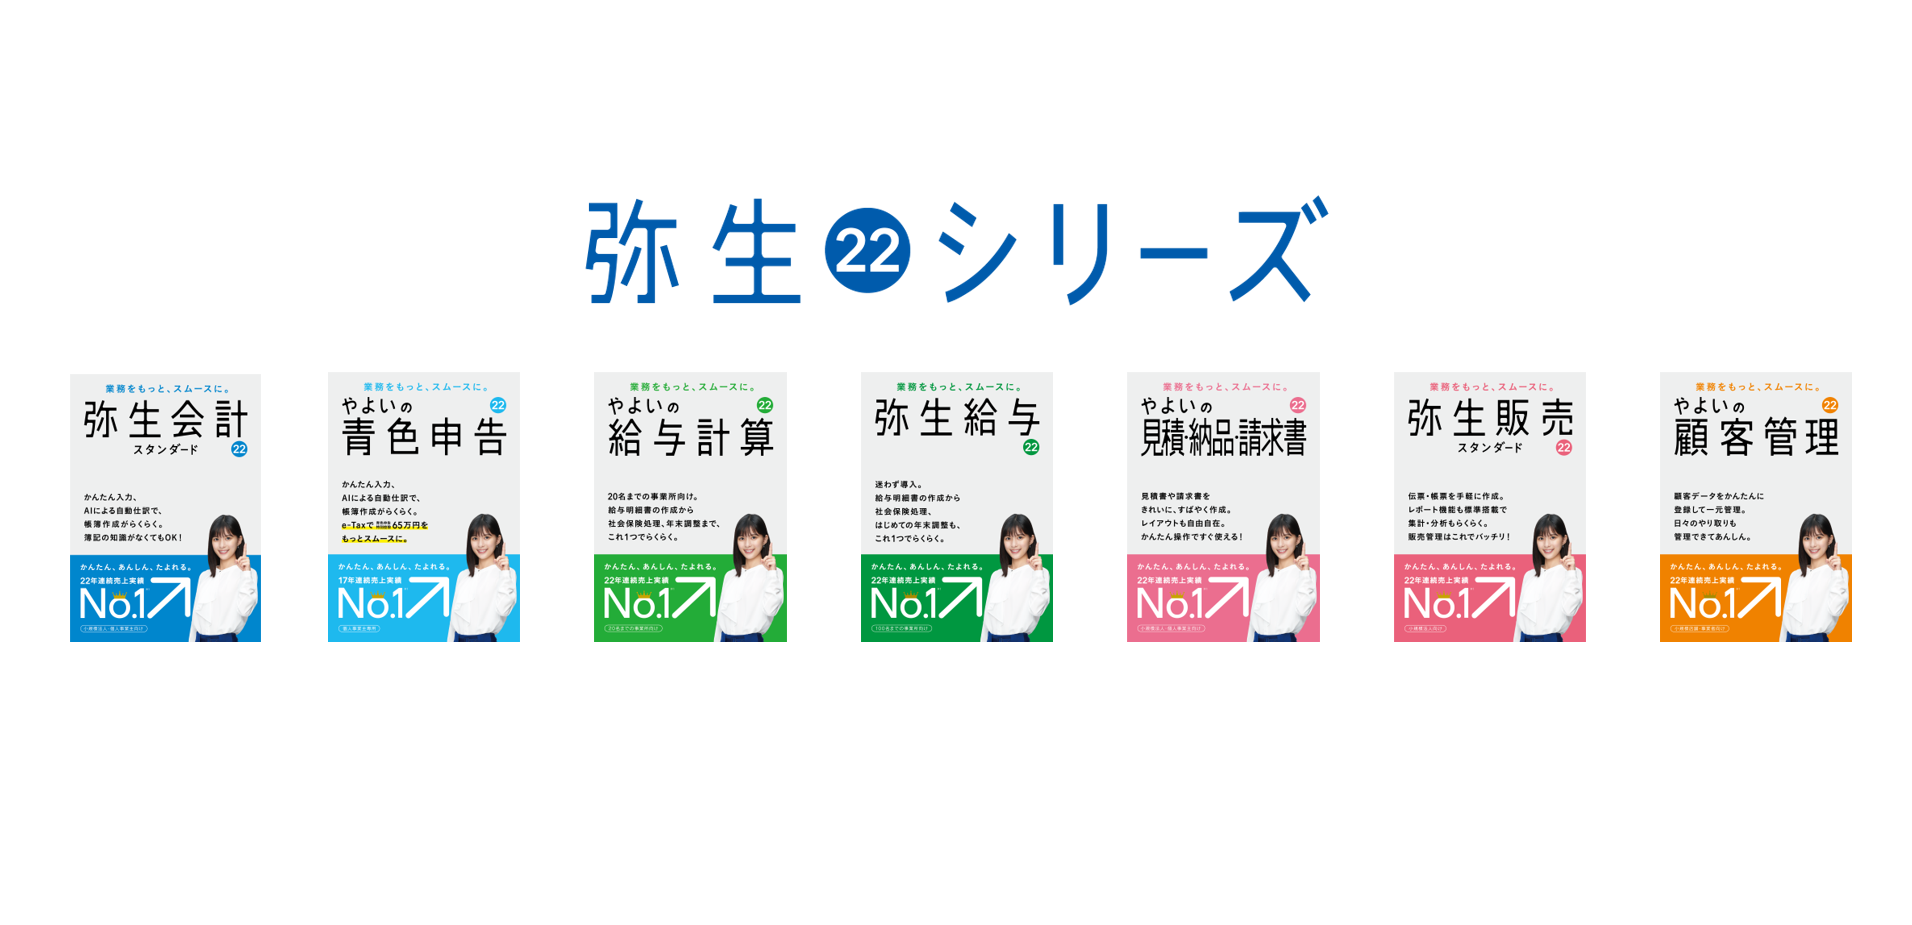 最新デスクトップアプリ「弥生 22 シリーズ」を10月22日(金)に発売 